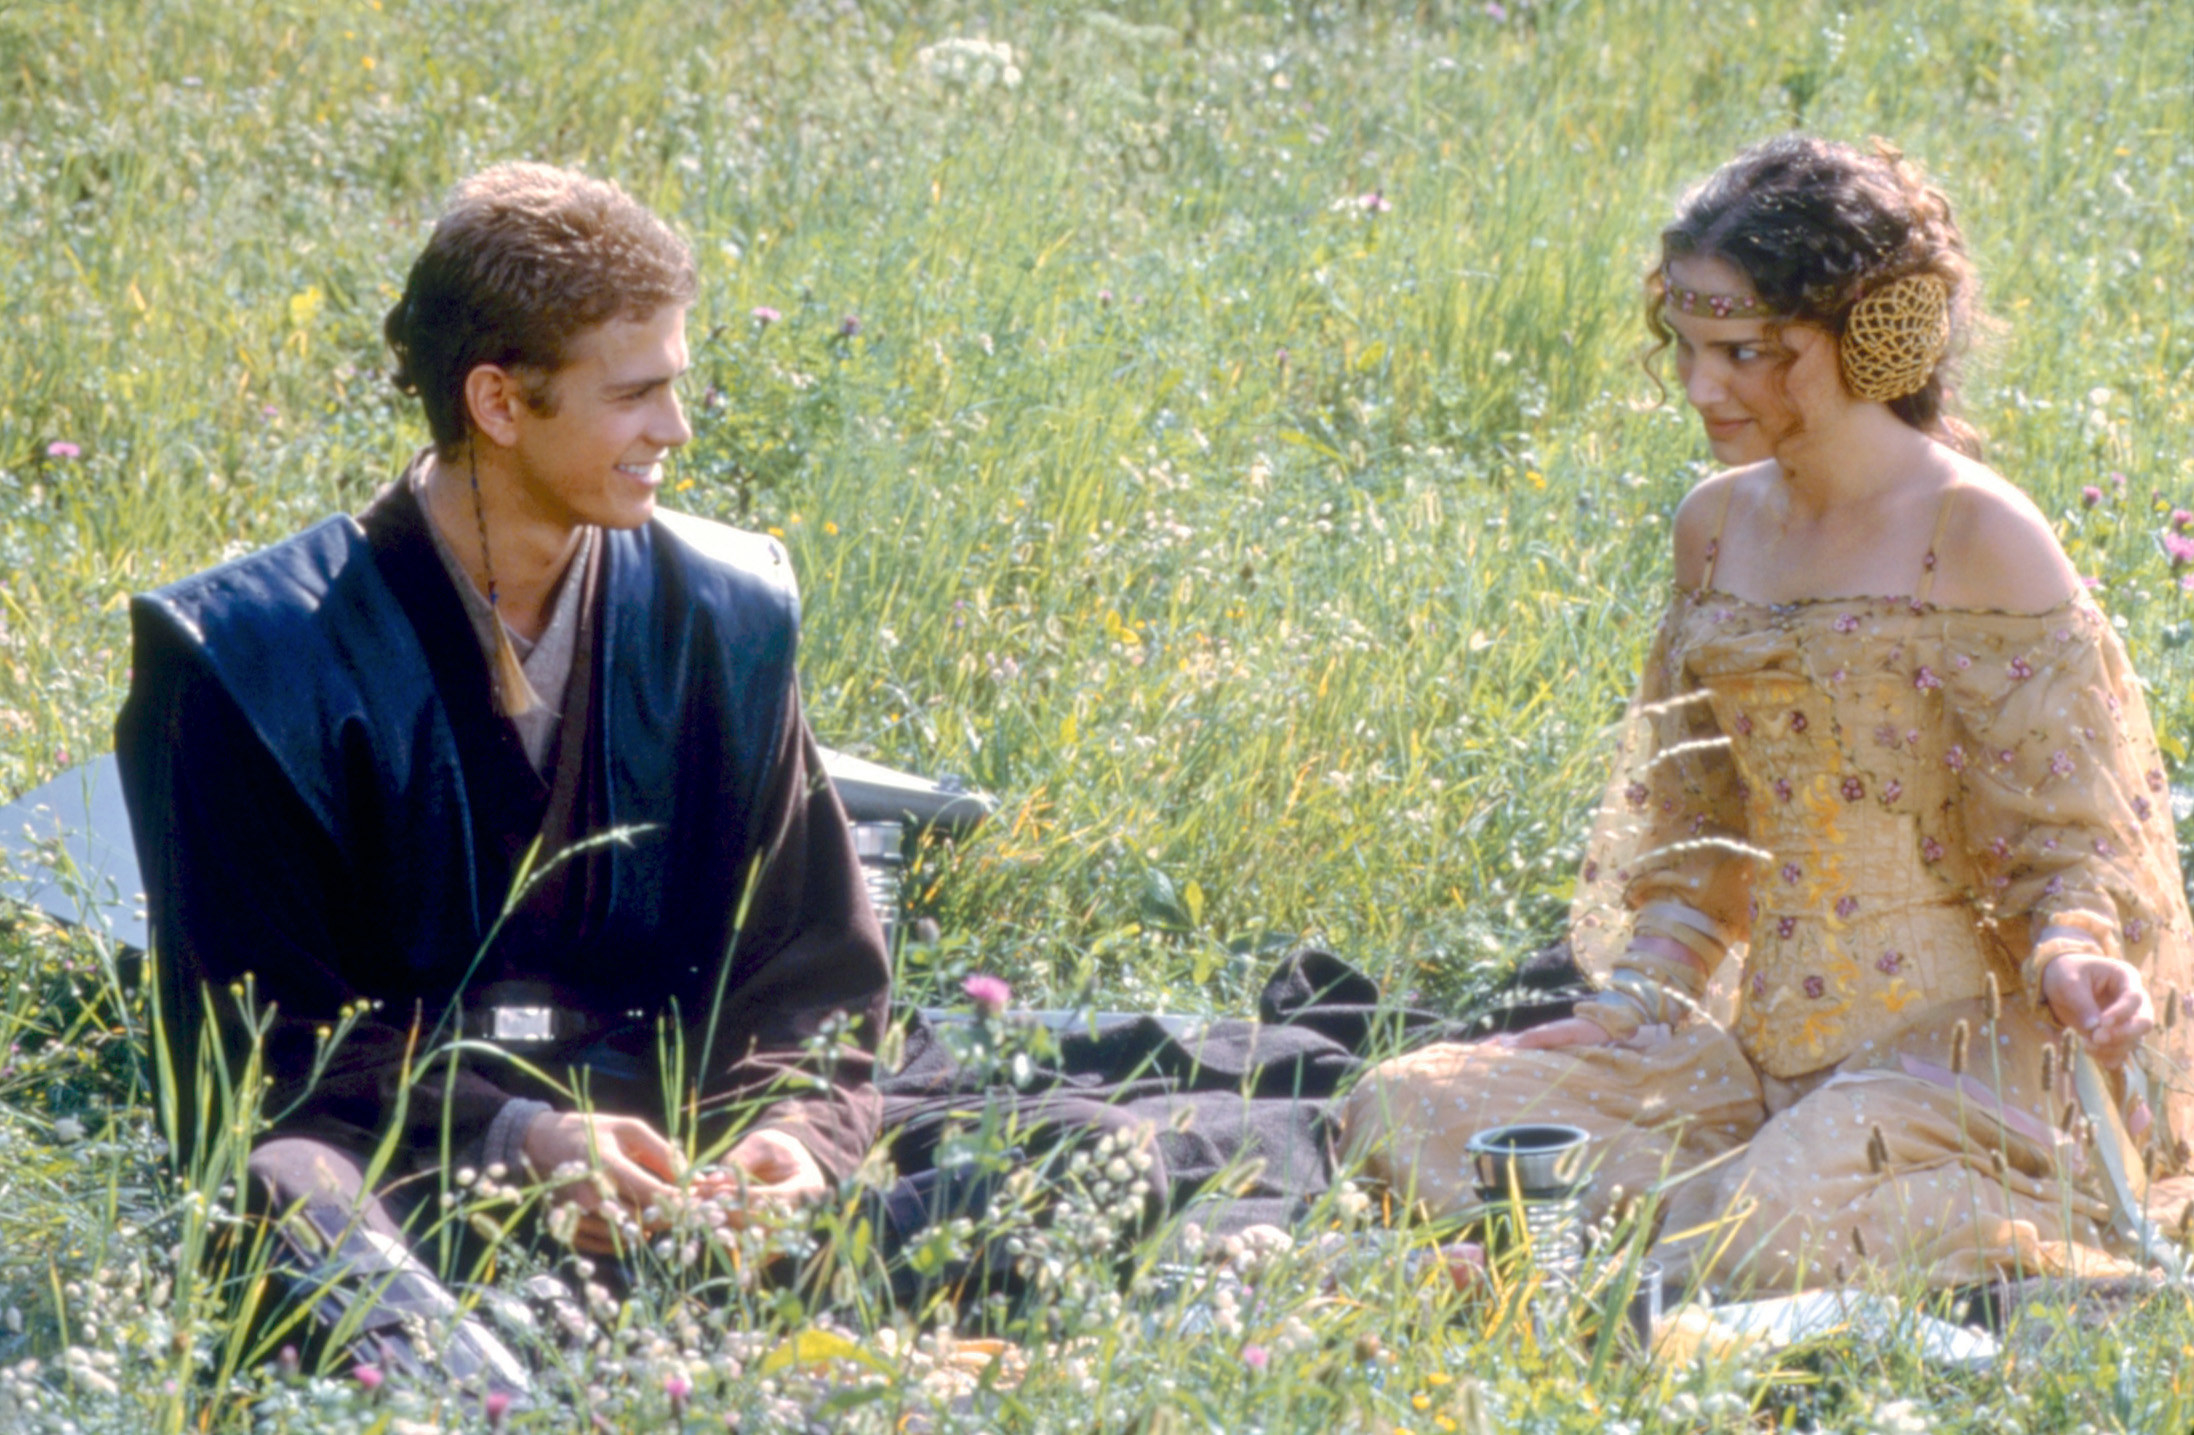 Natalie Portman and Hayden Christensen go on a picnic date in the Star Wars prequels